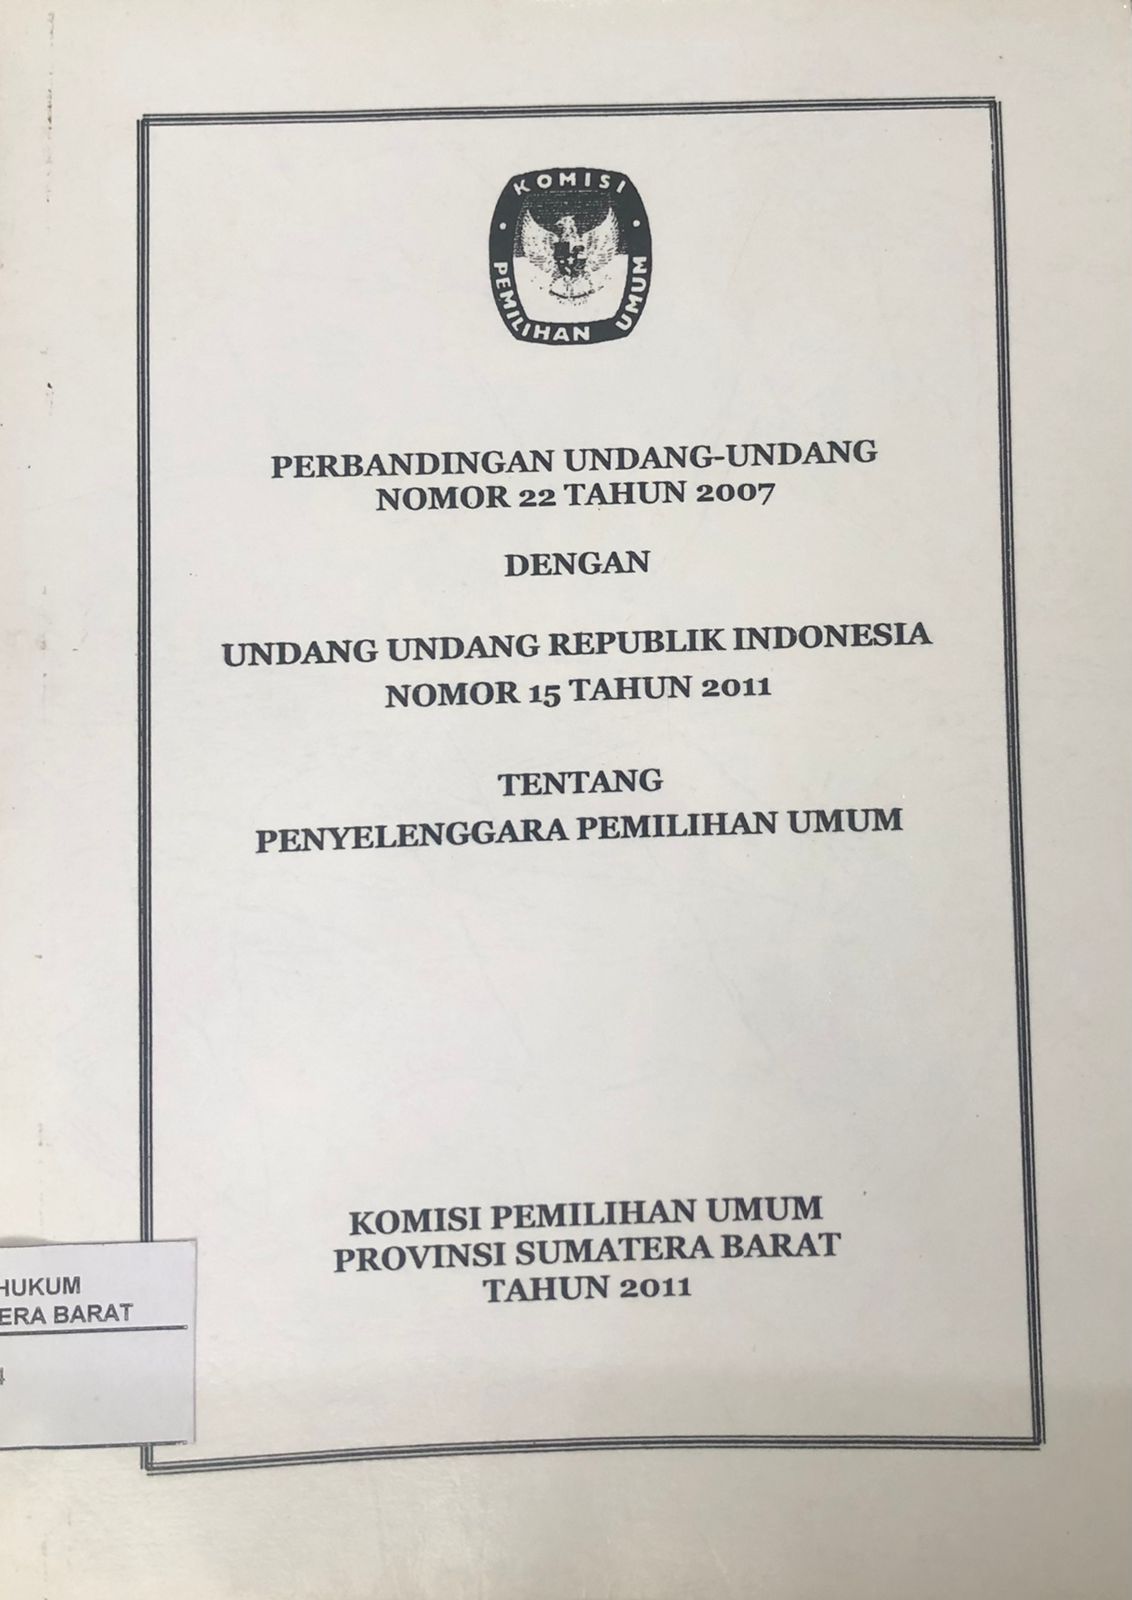 Perbandingan Undang-Undang Nomor 22 Tahun 2007 Dengan Undang-Undang Republik Indonesia Nomor 15 Tahun 2011 Tentang Penyelenggara Pemilihan Umum